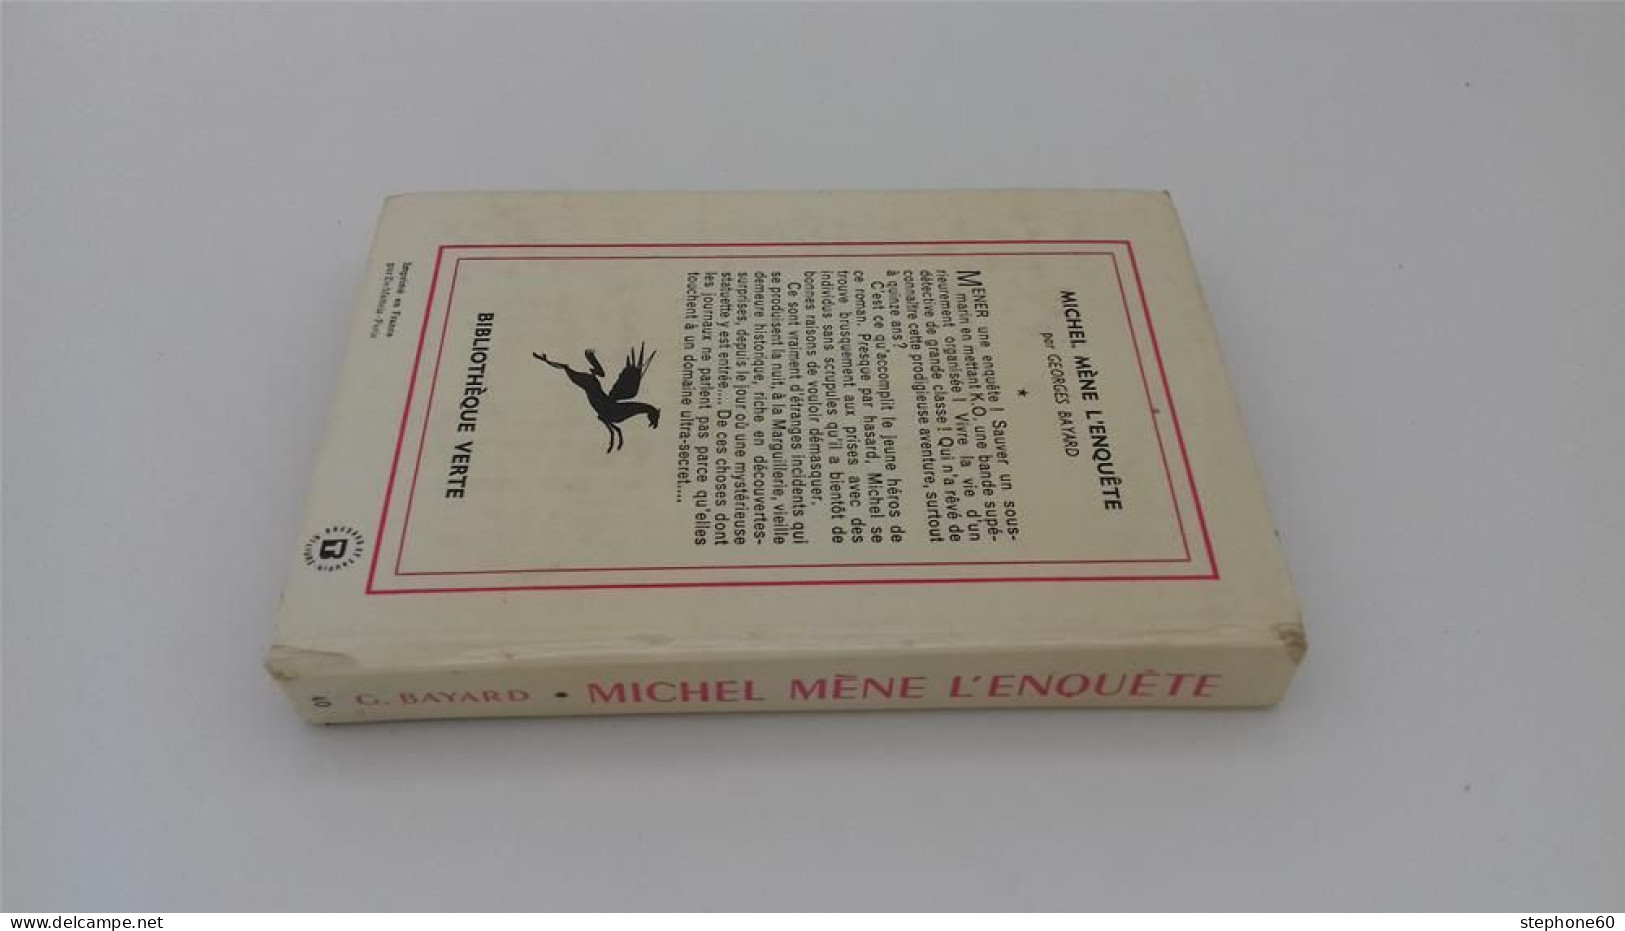 999 - (565) Michel Mene L'enquete - Georges Bayard - 1958 Bibliotheque Verte - Bibliotheque Verte